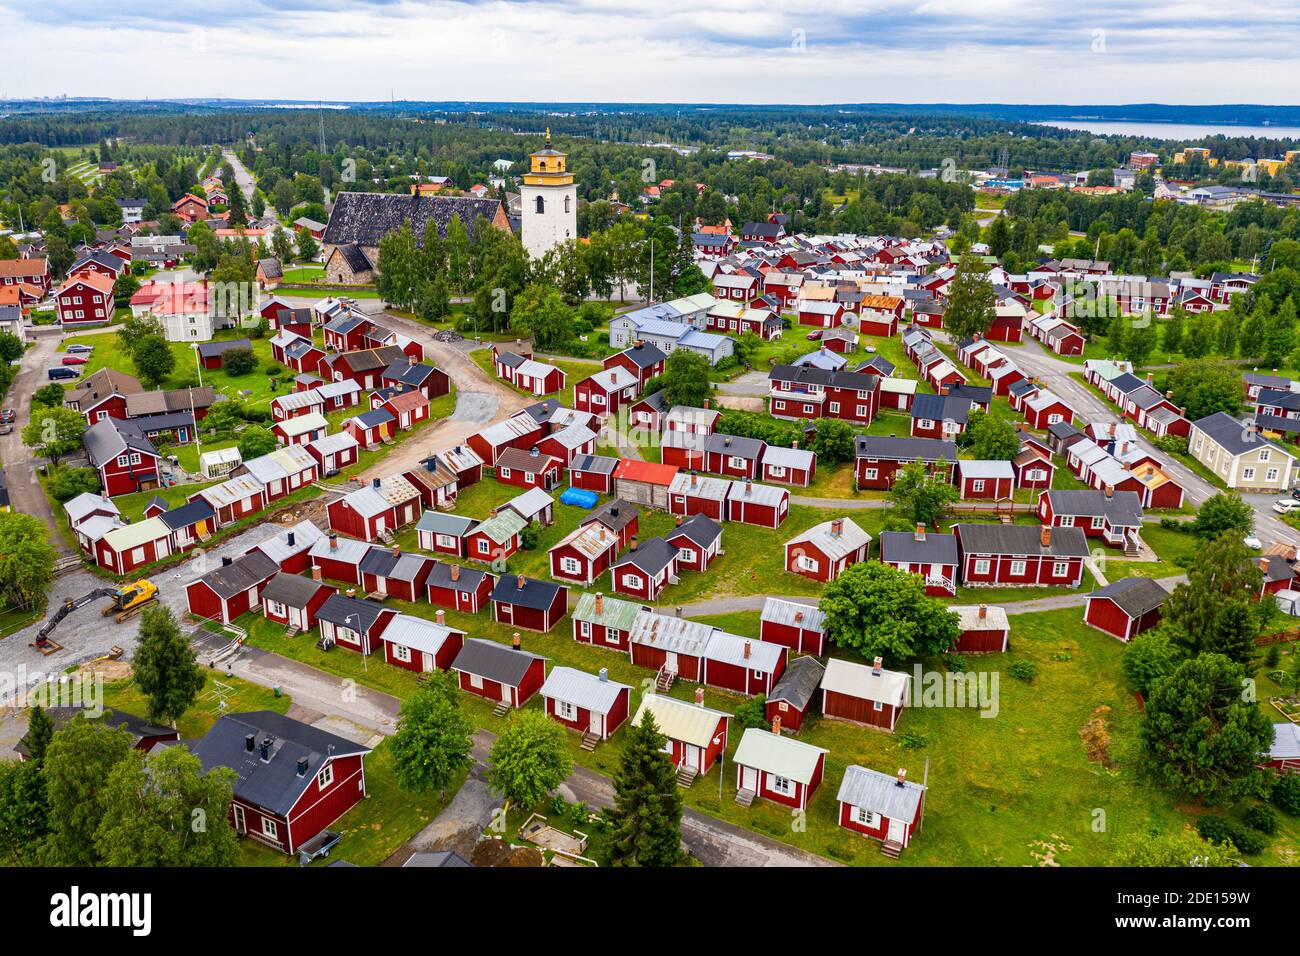 Antenne de Gammelstaden, site classé au patrimoine mondial de l'UNESCO, ville de l'église de Gammelstad, Lulea, Suède, Scandinavie, Europe Banque D'Images